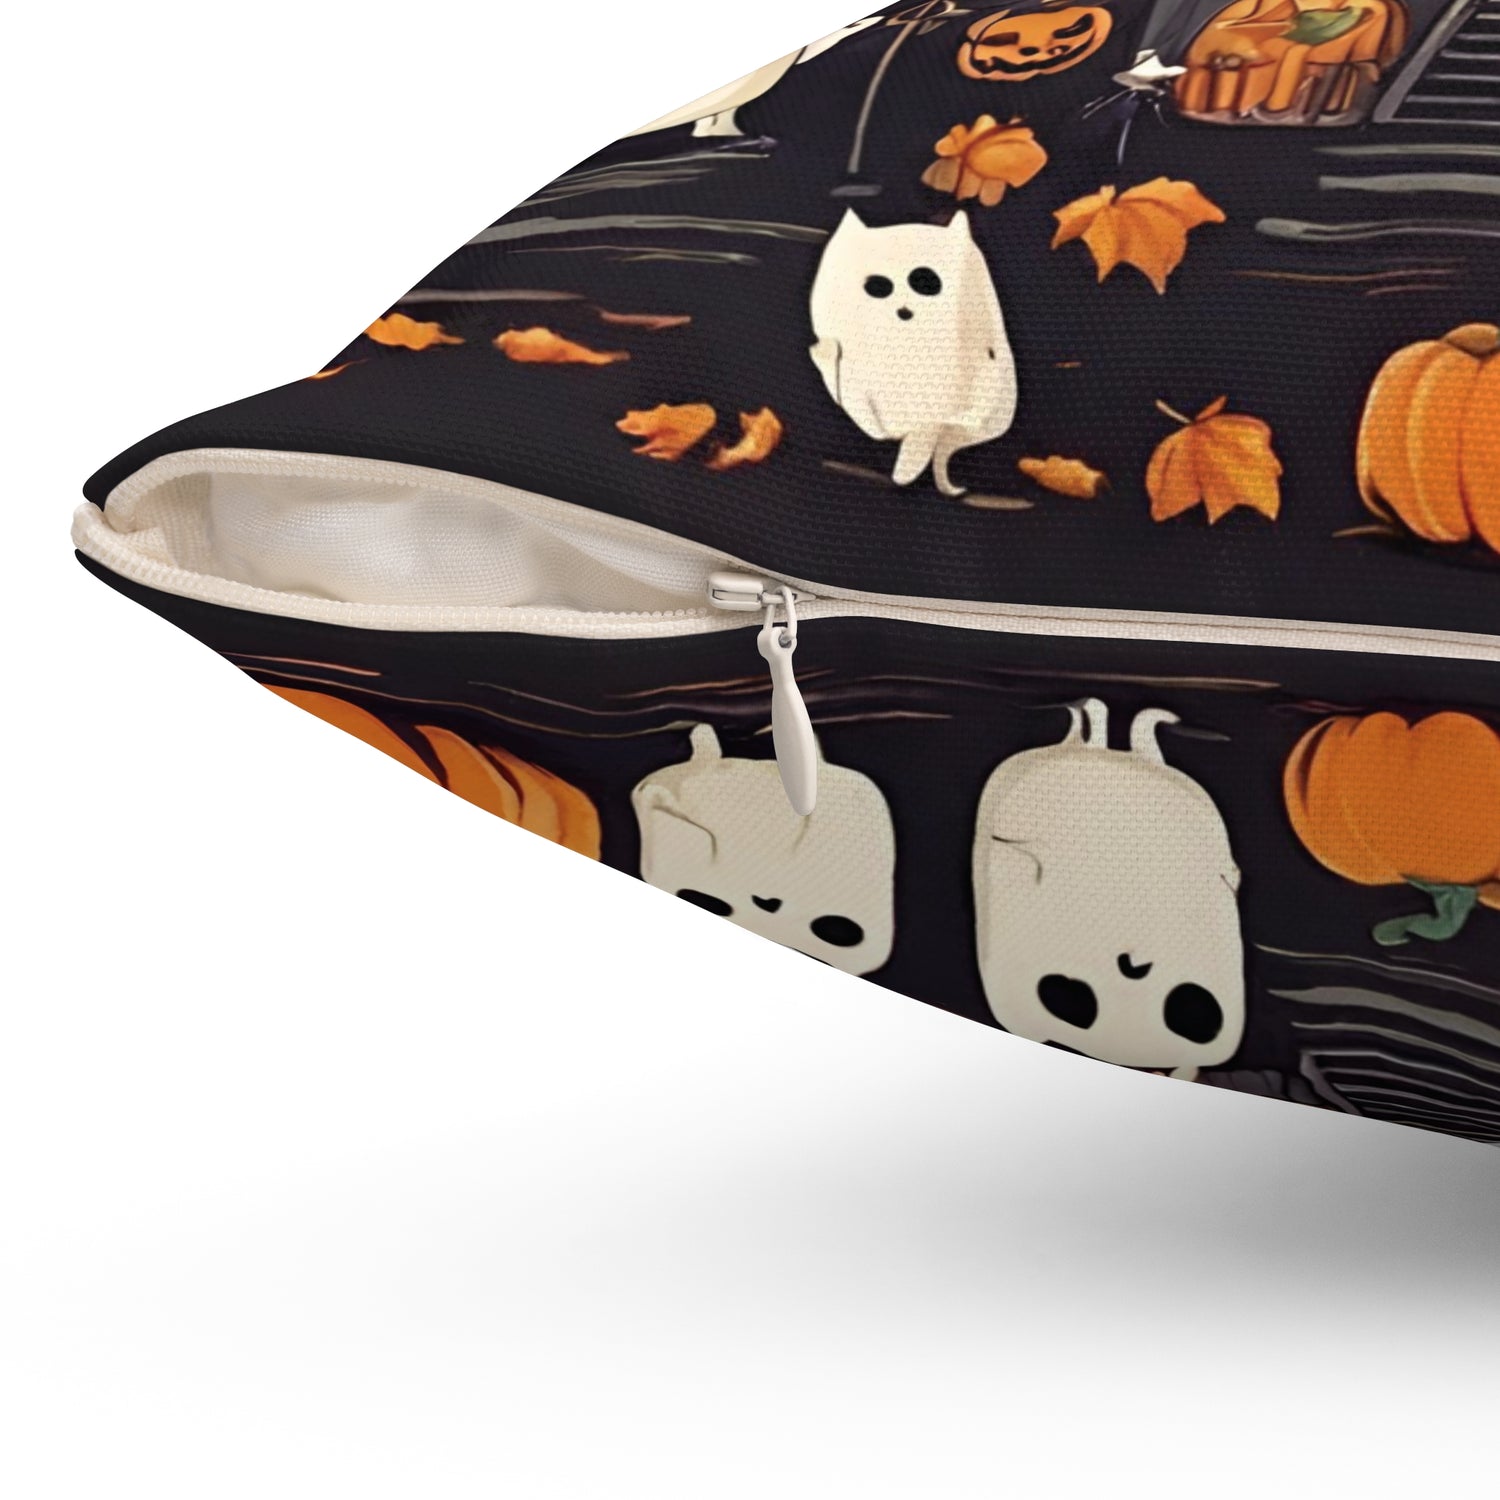 Throw Pillows | Halloween Home Décor Home Decor Petrova Designs